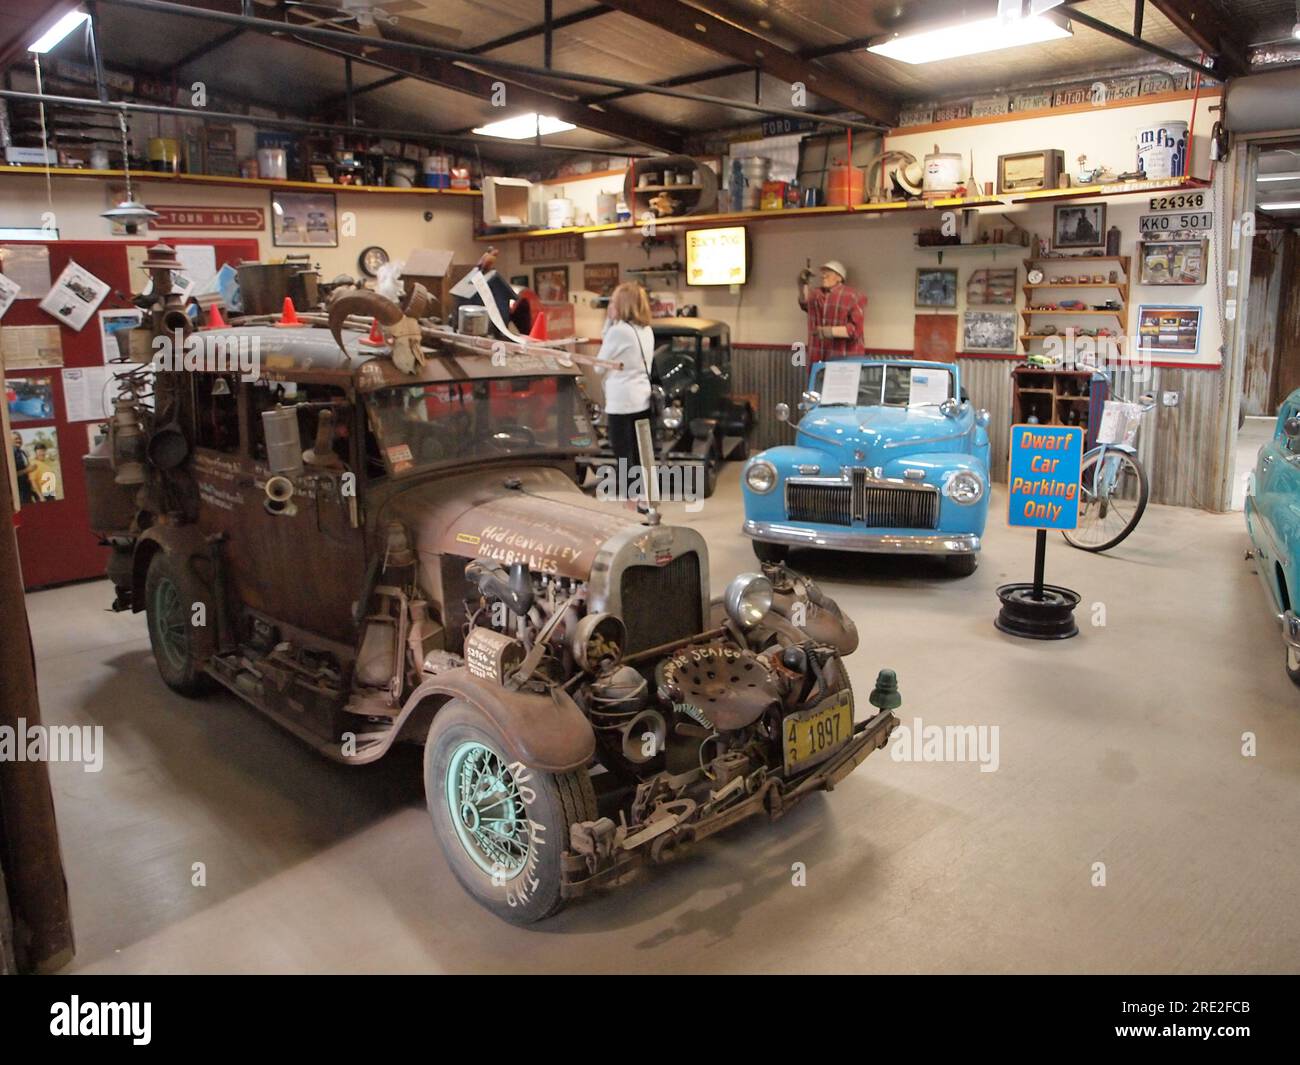 Arizona's Dwarf Car Museum in Maricopa, Arizona. Verkleinerte amerikanische Hot Rods, handgefertigt von einem Individuum. Die Autos sind mit Strom versorgt und können gefahren werden. Stockfoto